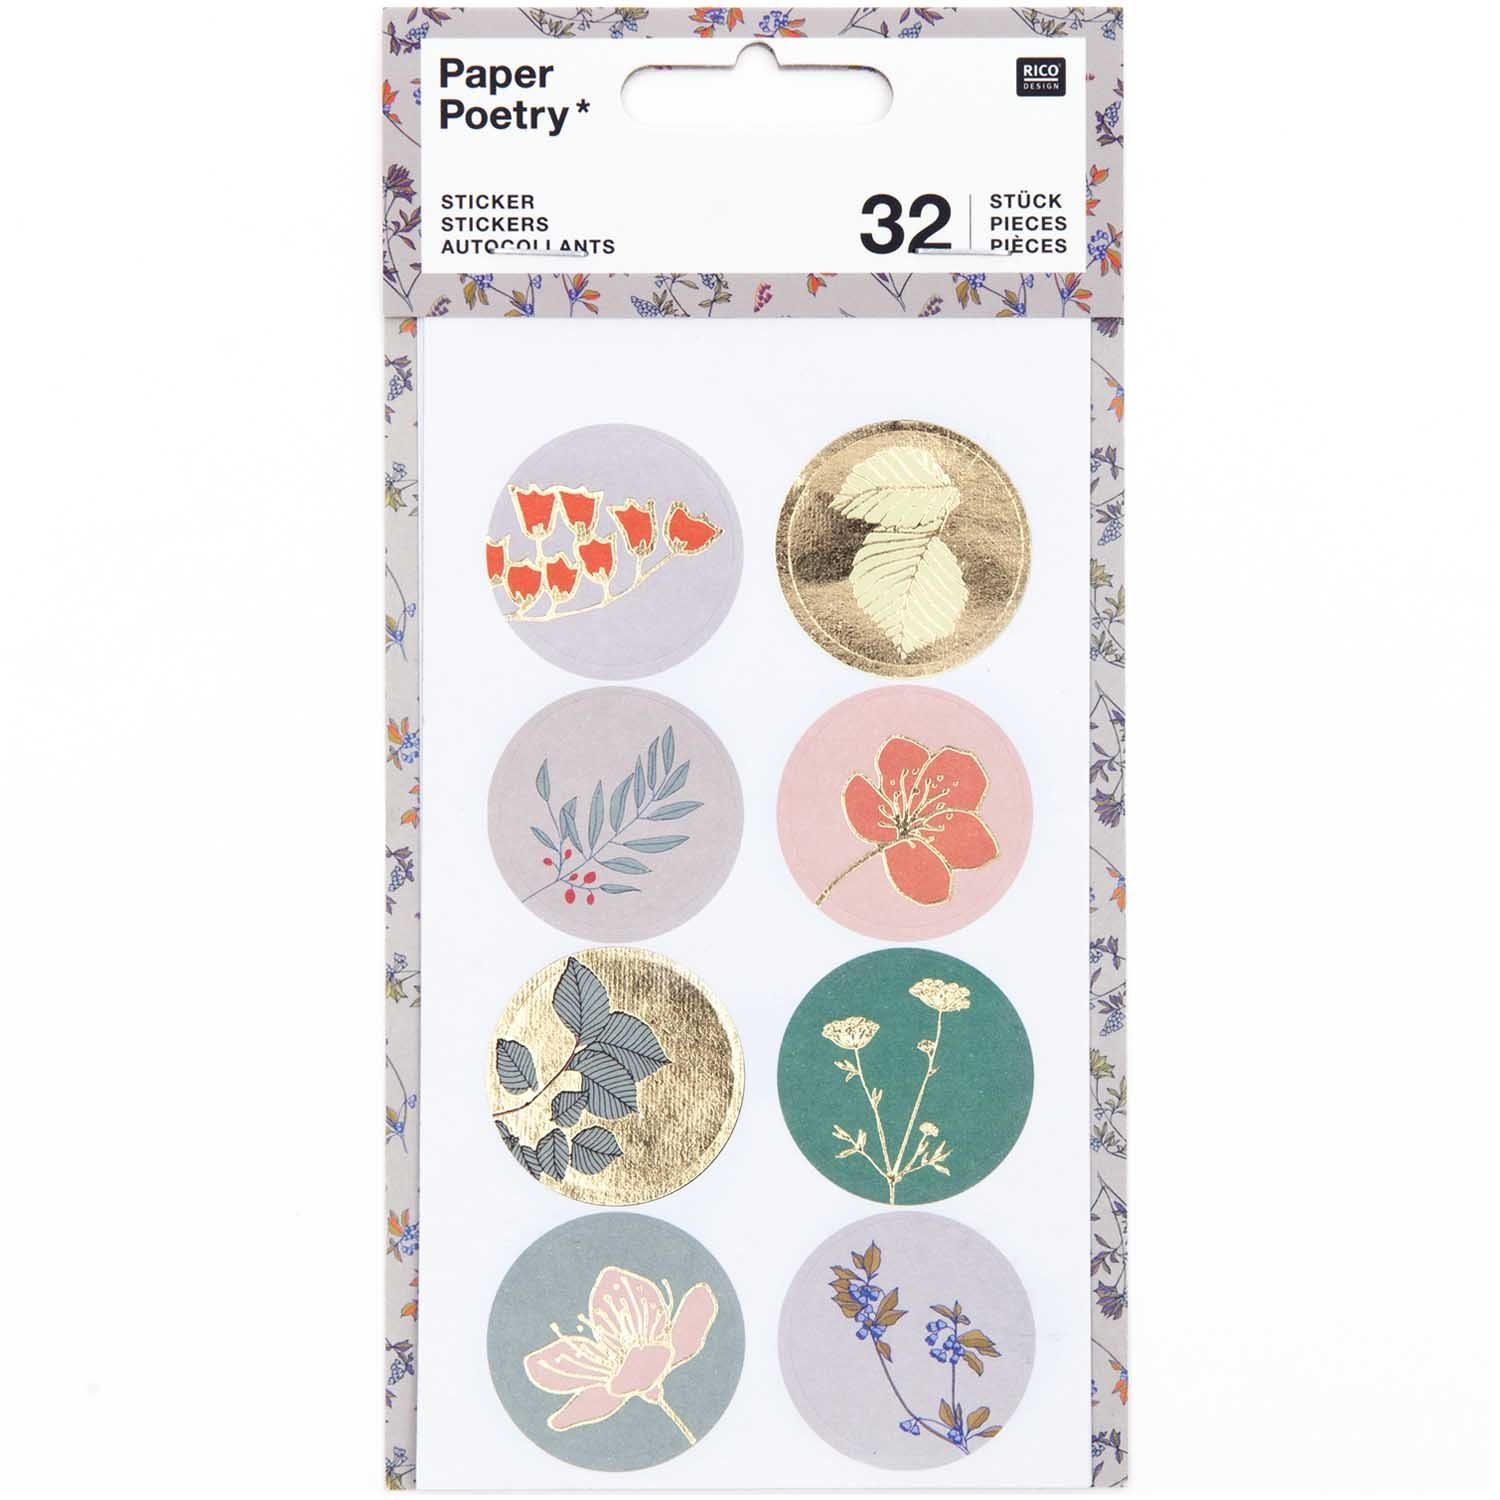 Rico Design Sticker Sticker Pflanzen 4 Blatt PAPER POETRY